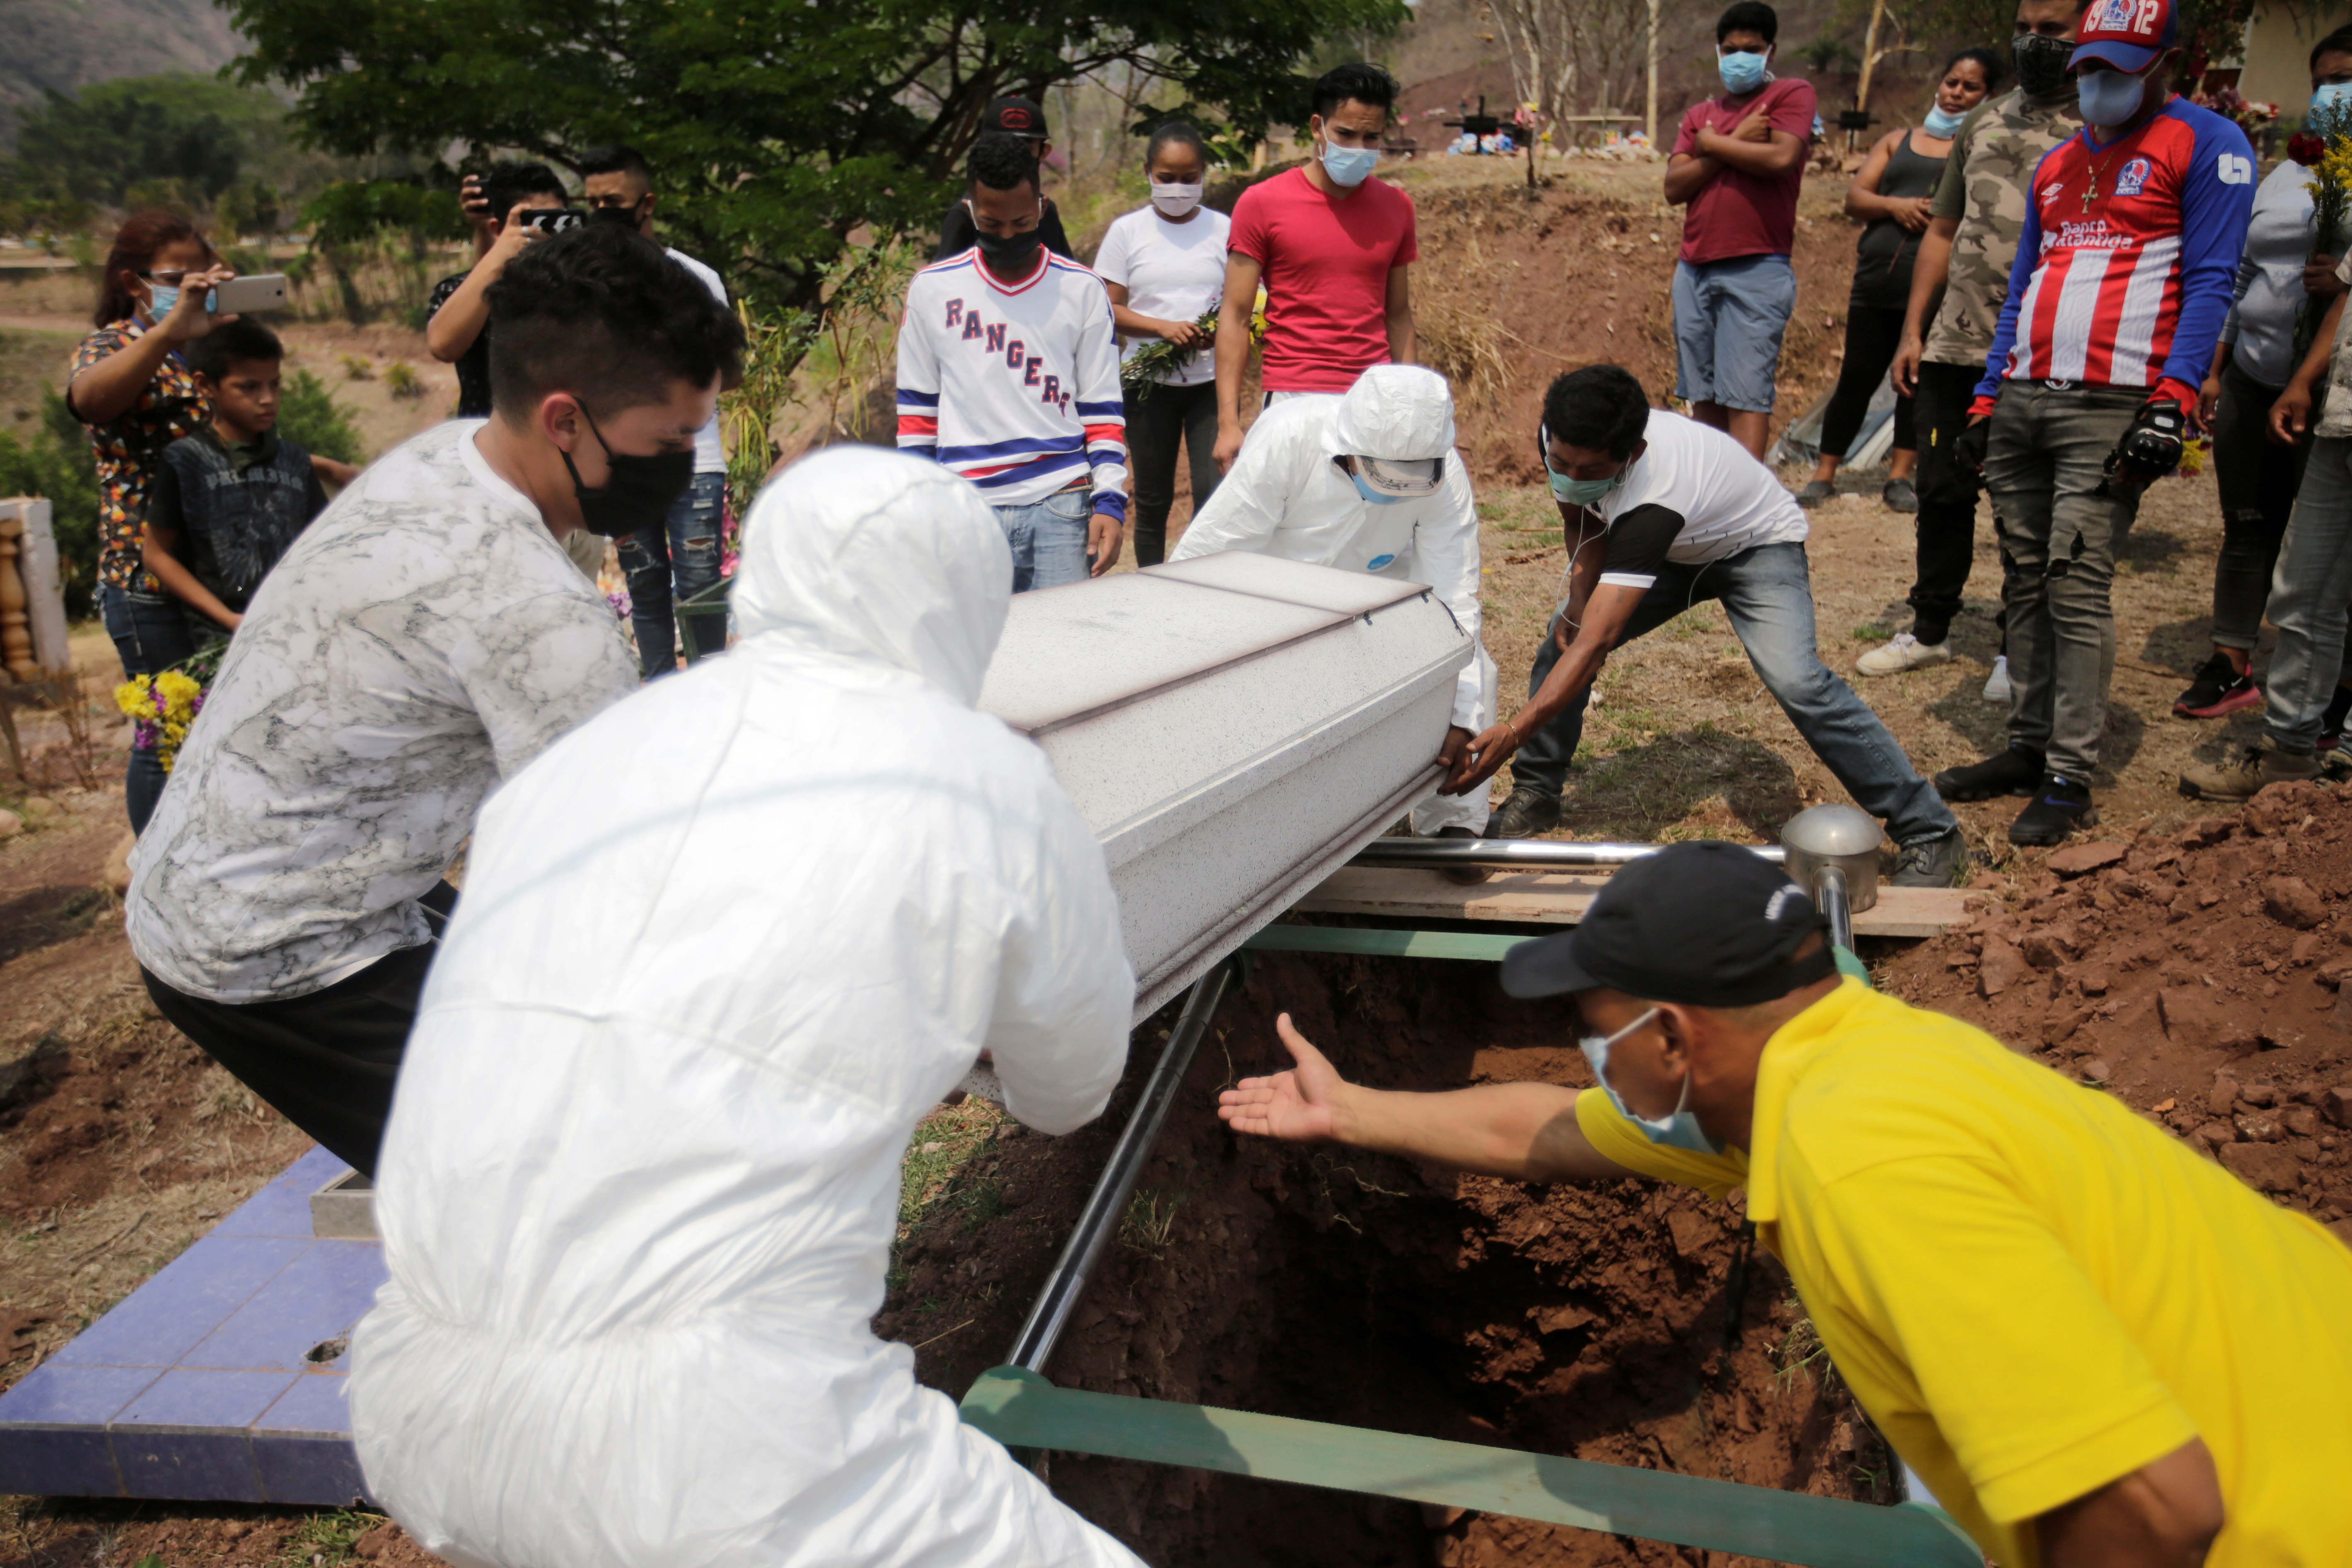 Trabajadores de una funeraria bajan un ataúd a la tumba en medio del brote de coronavirus en Tegucigalpa, Honduras, el 6 de mayo de 2020. (REUTERS/Jorge Cabrera)